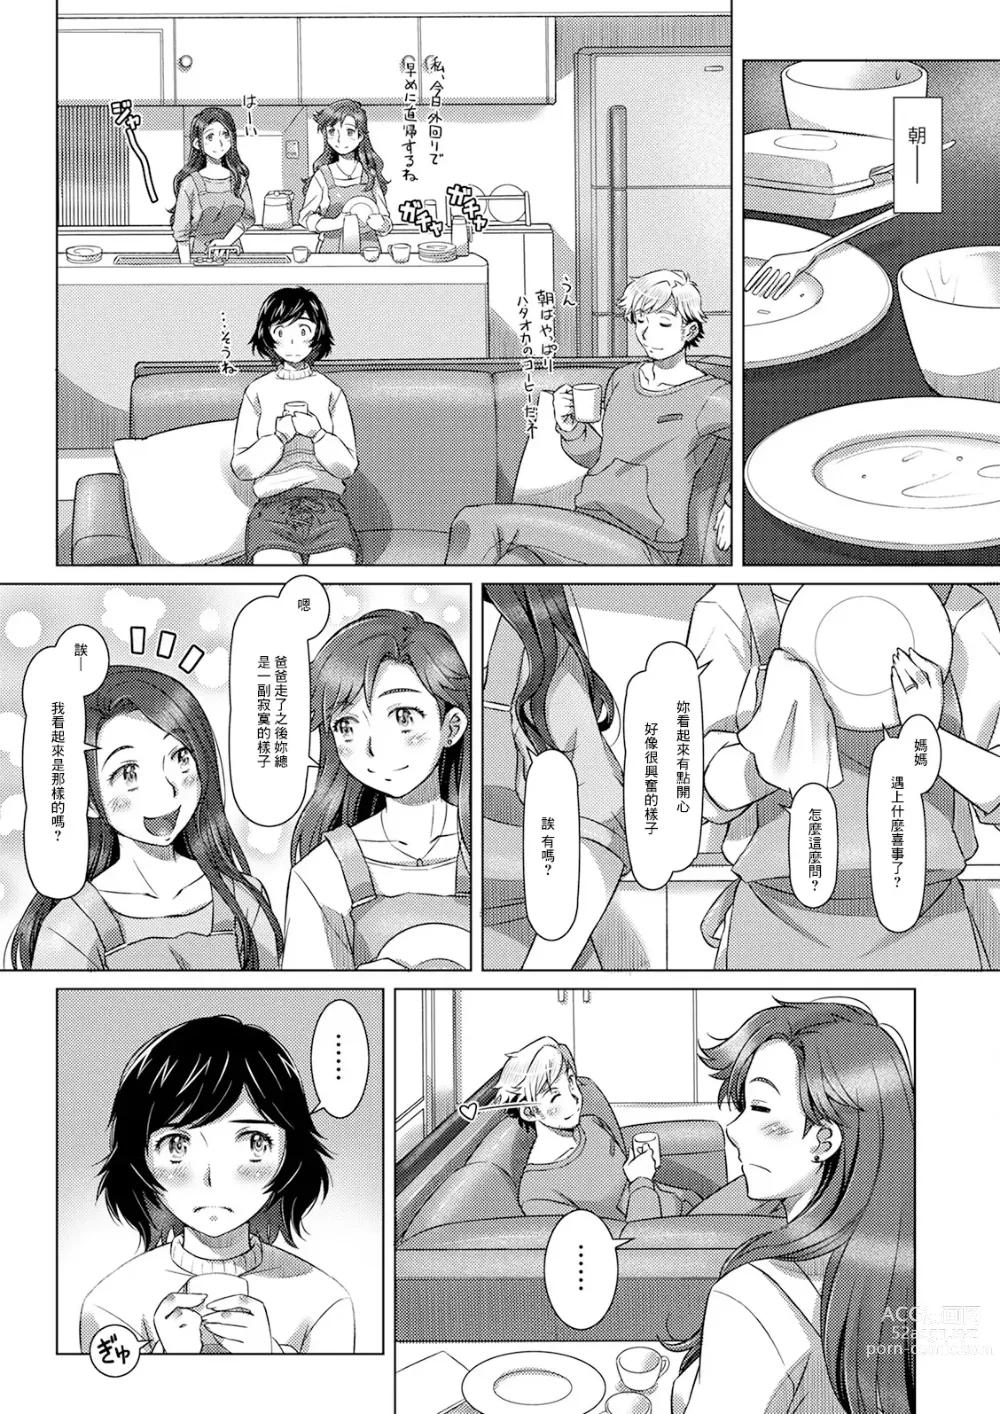 Page 2 of manga 三つの愛の戯れ 中編